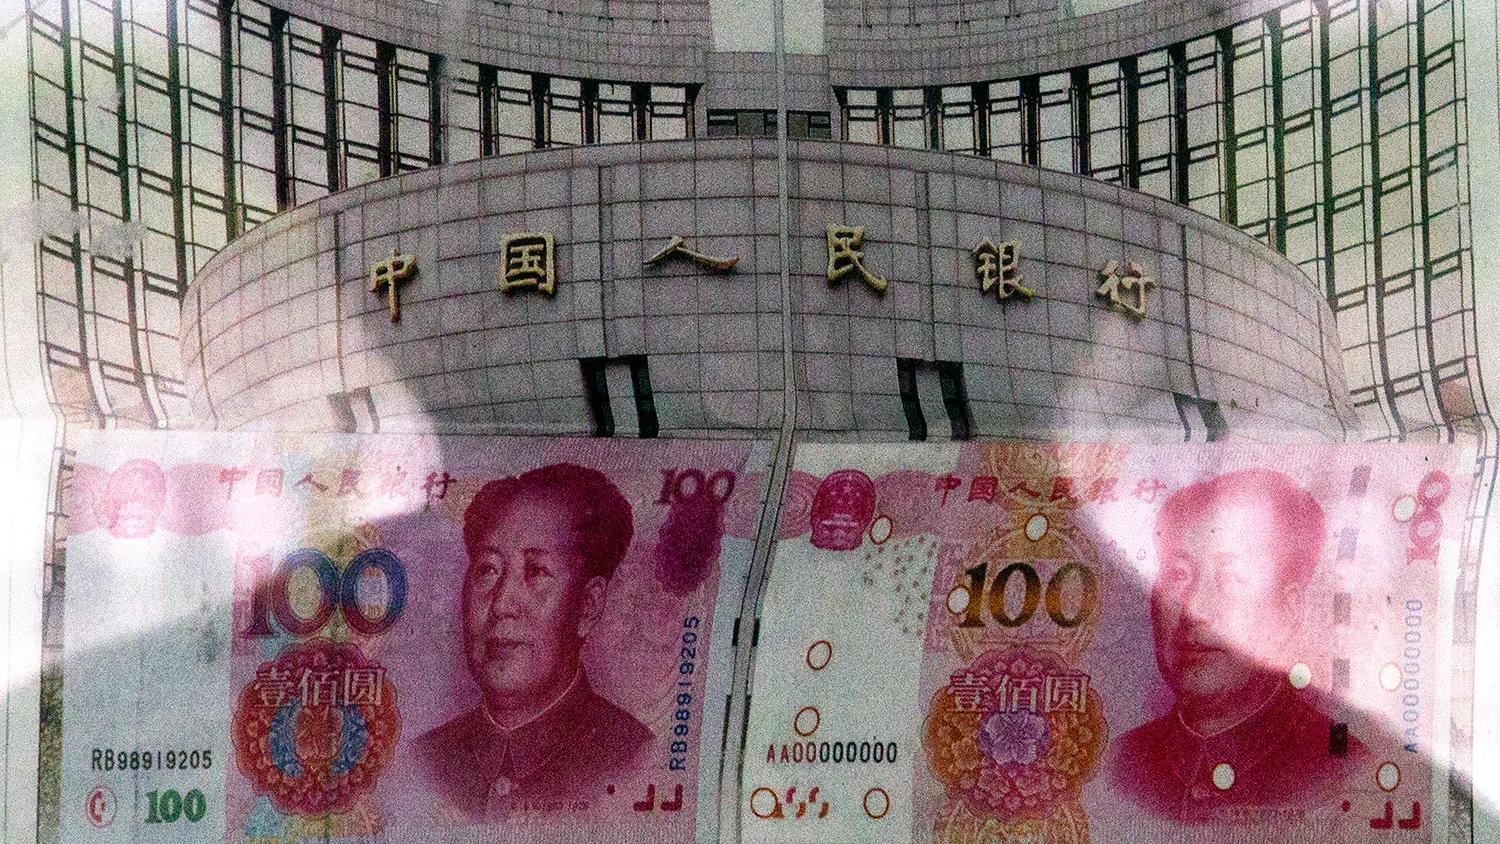 中共急推數字貨幣 在深圳受冷落 流通受限支付不便